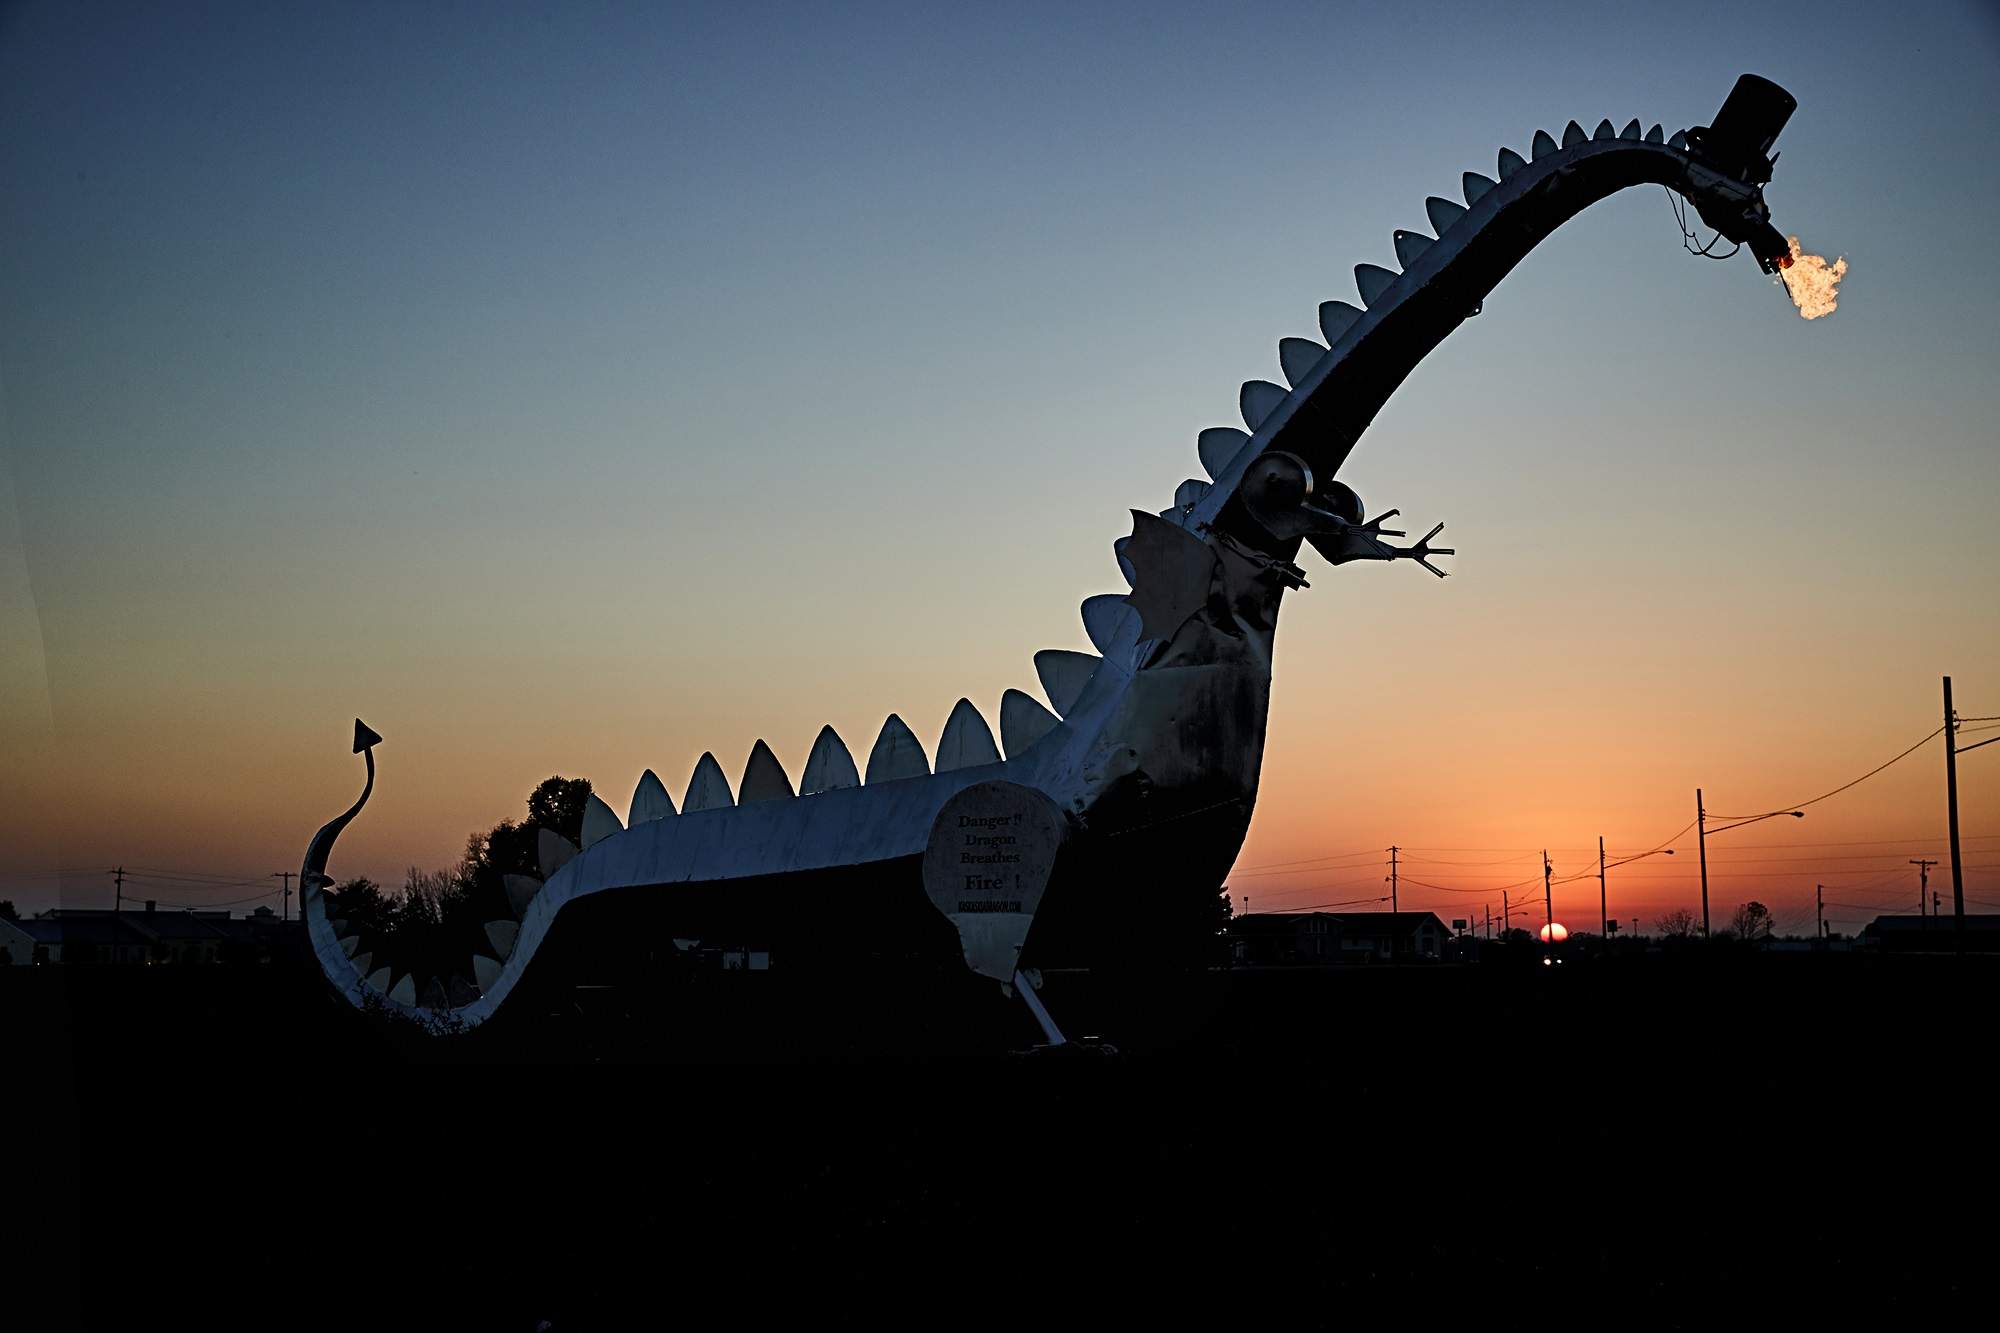 Il Drago di Kaskaskia, una grande scultura di drago che sputa fuoco.